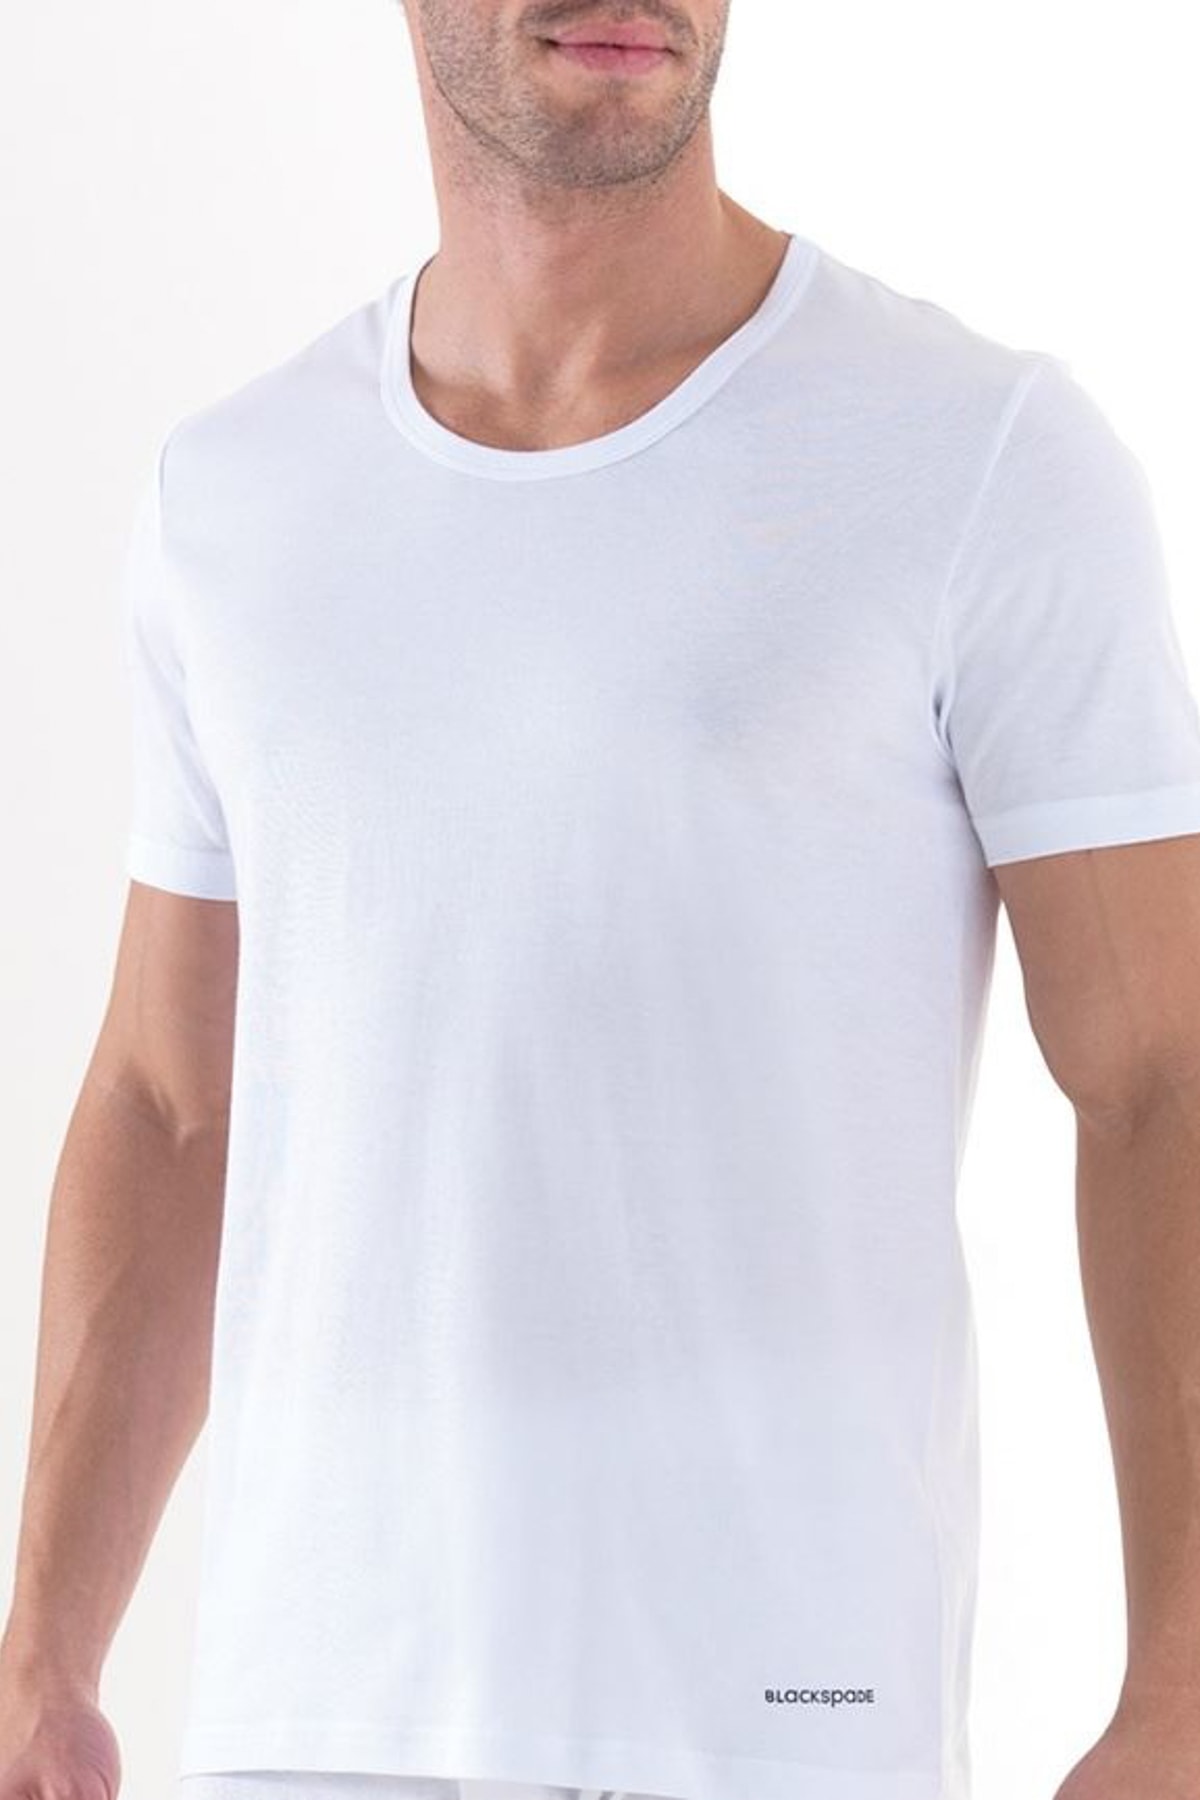 Blackspade Beyaz Erkek T-Shirt 9217